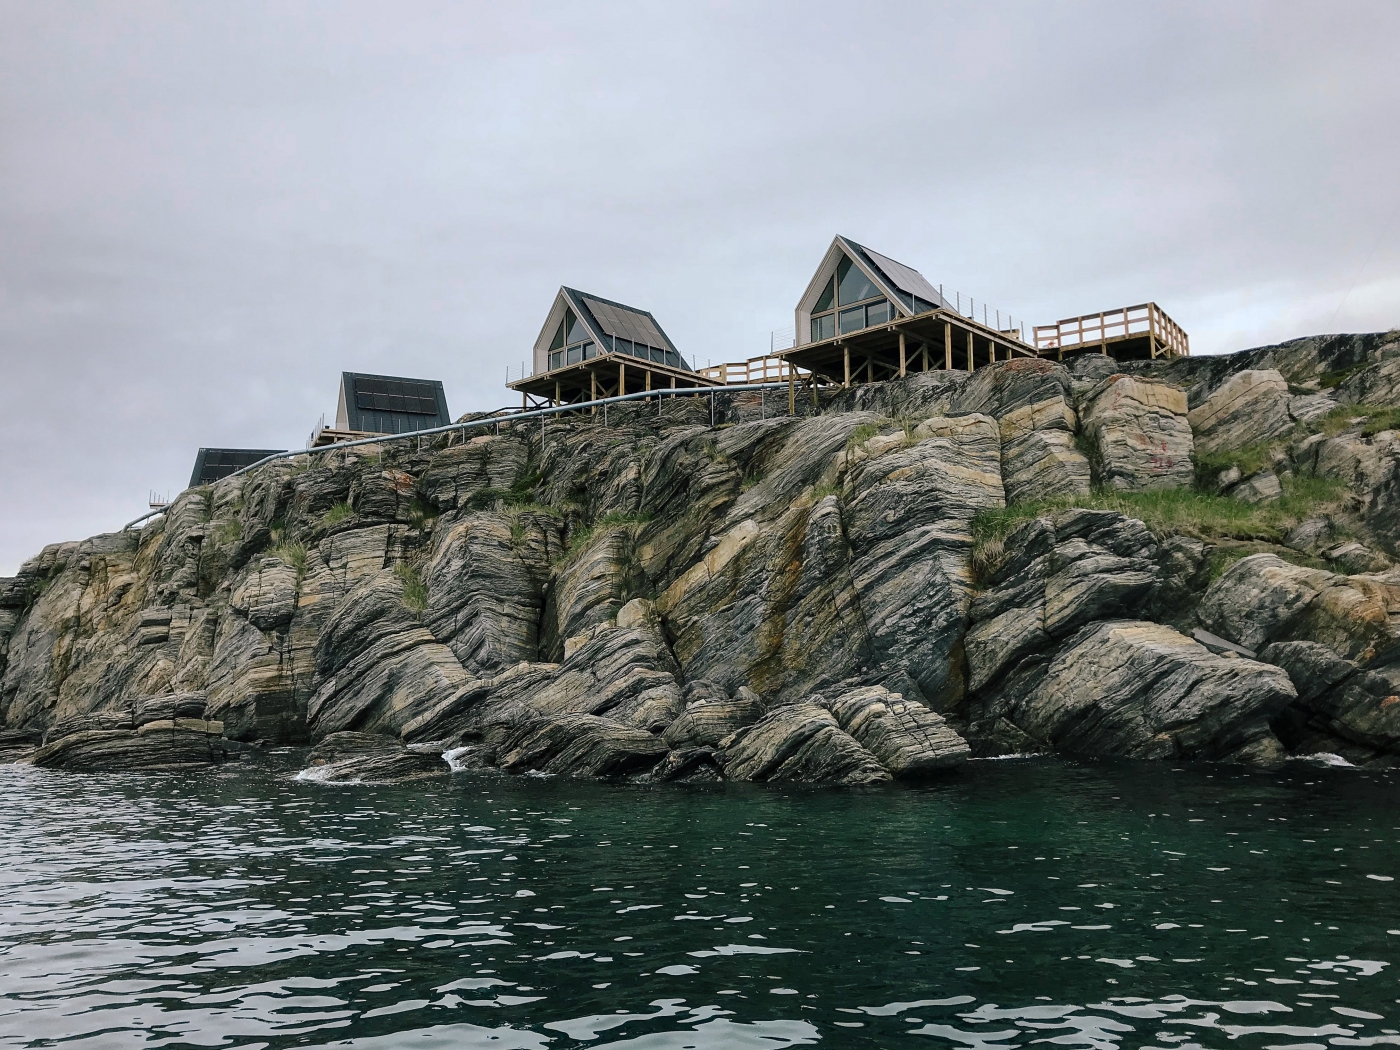 Details of the Iliminaq Lodges along the shoreline. Photo by Jessie Brinkman Evans